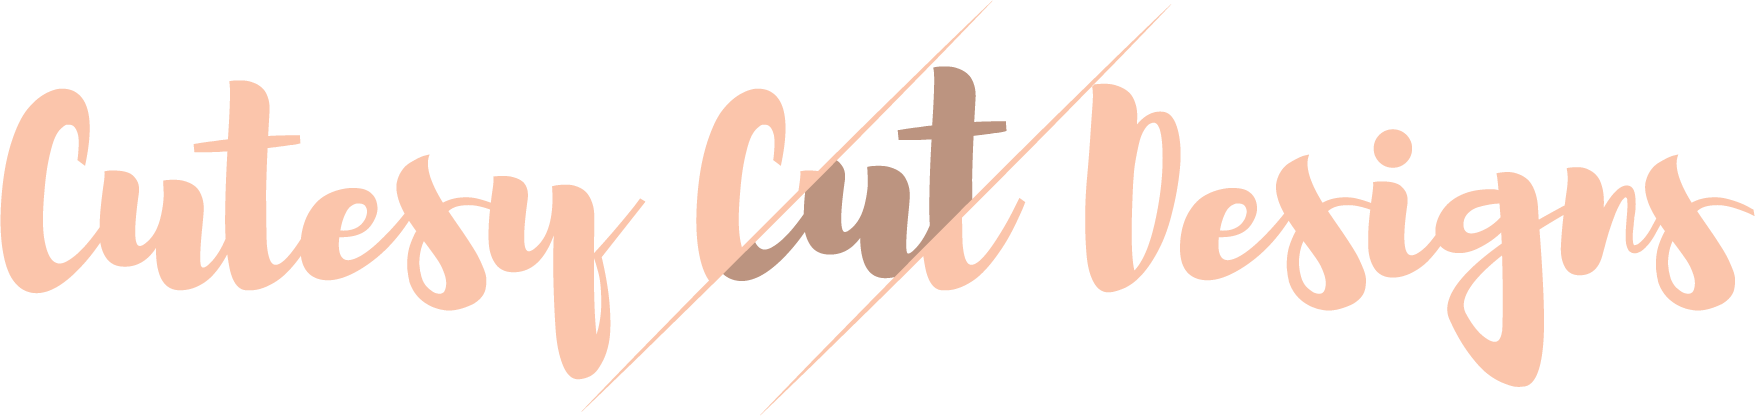 Cutesy Cut Designs logo